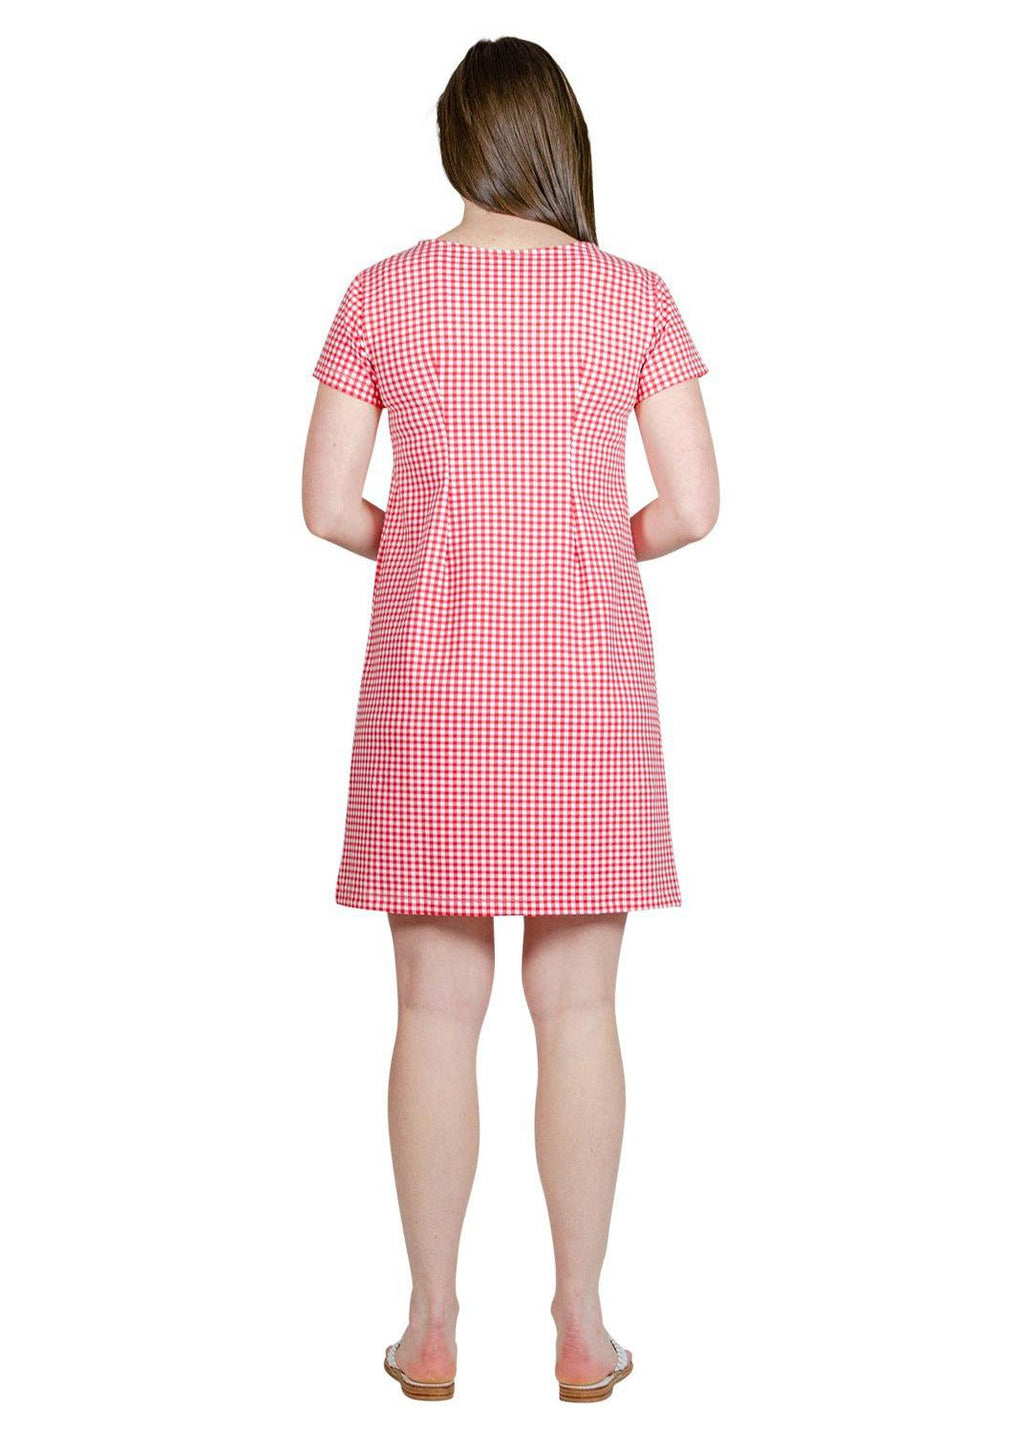 Marina Dress - Gingham Check Red/White-2